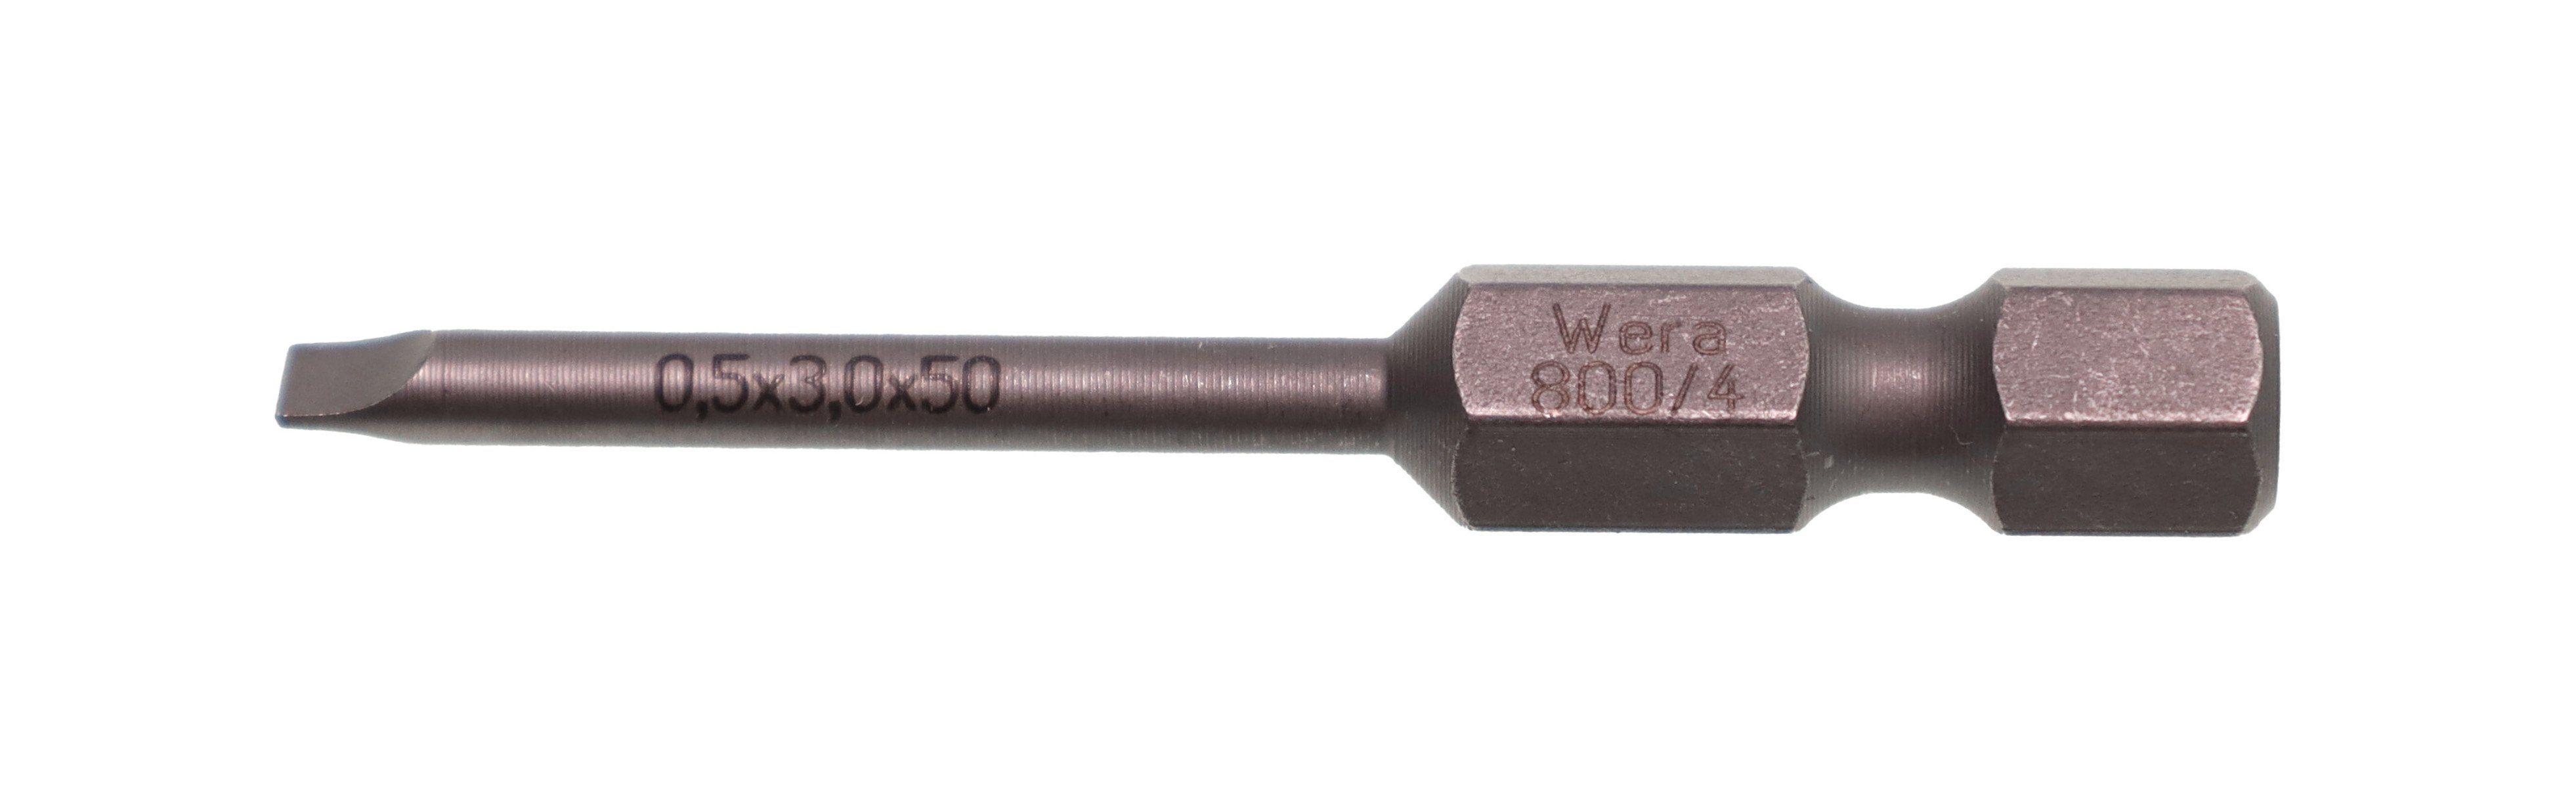 Bit-Set 0,5x3,0x50mm Sechskant-Antrieb 1/4" 05059305001 Wera Schlitz-Bit Bohrer- und Wera